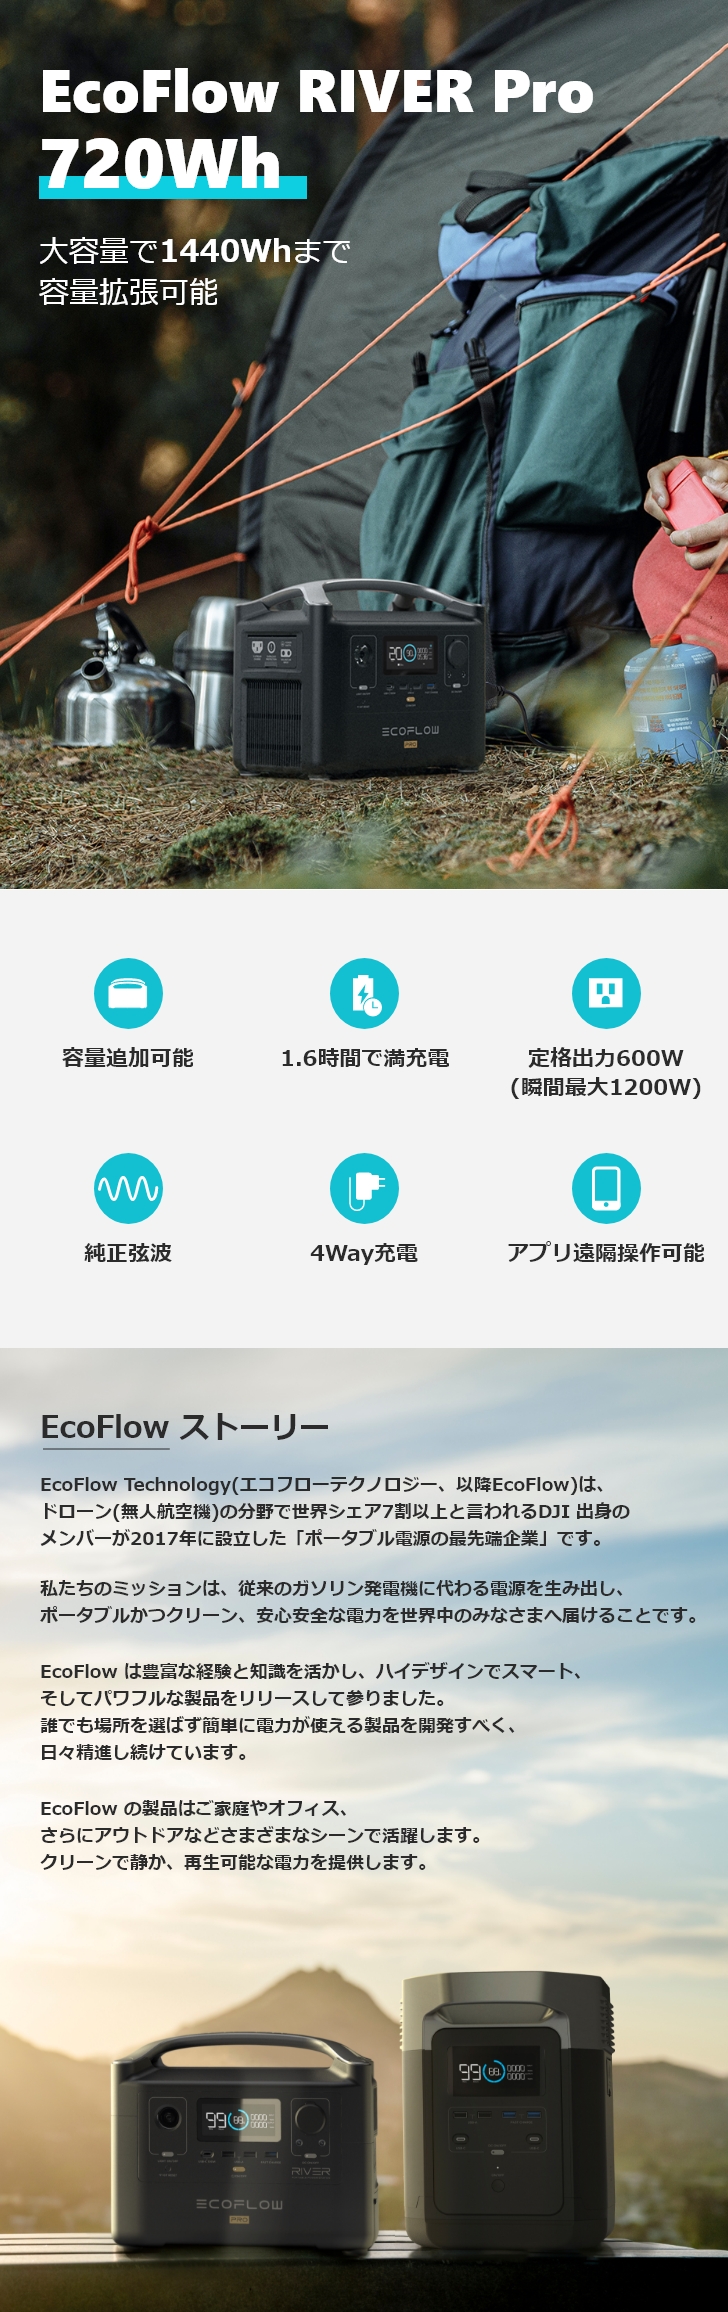 EcoFlow EcoFlow RIVER Proポータブル電源